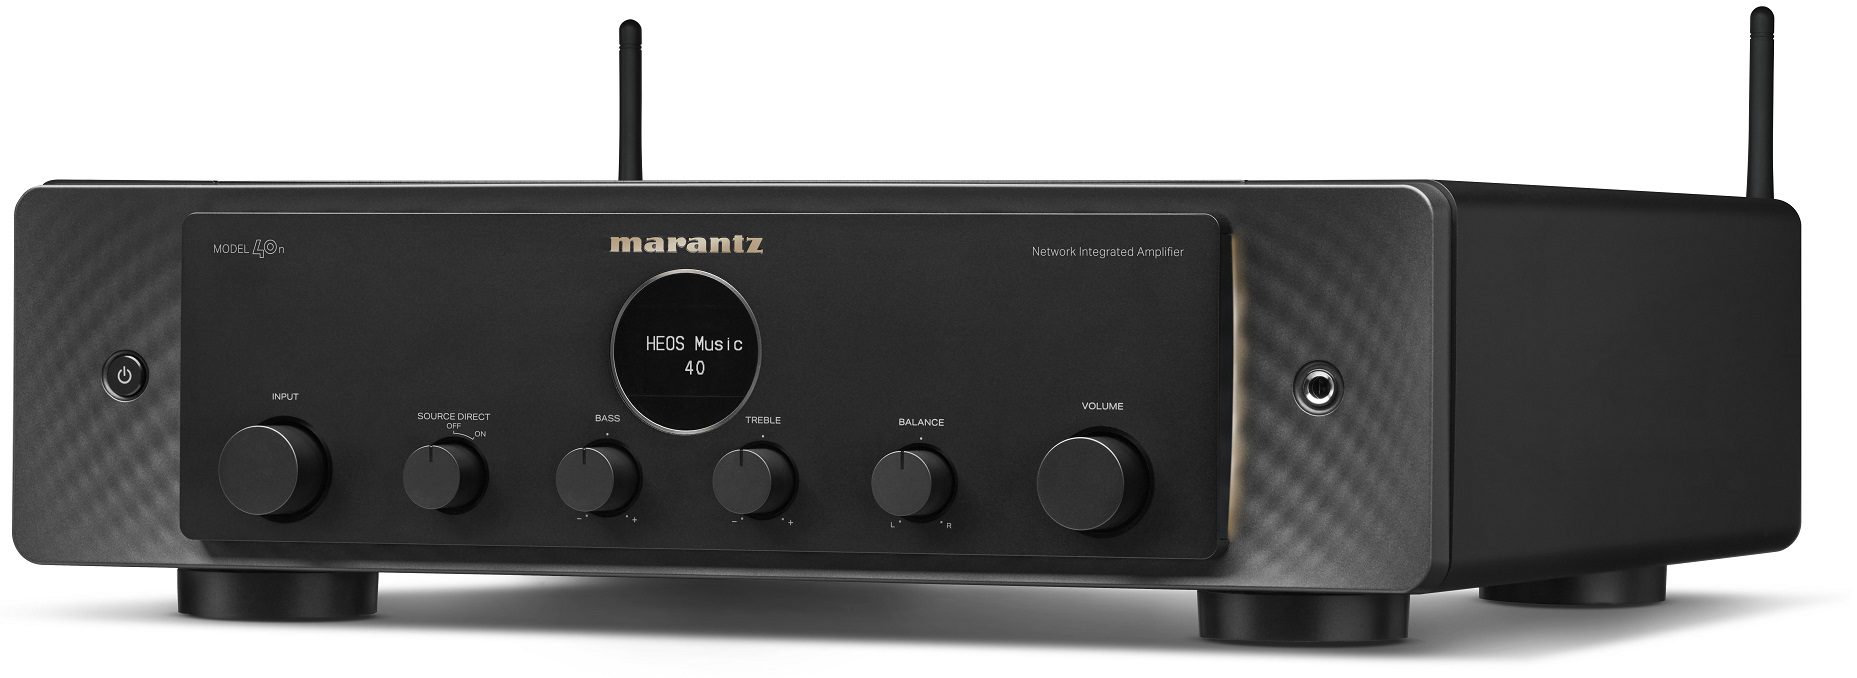 Marantz MODEL 40n zwart - Stereo receiver